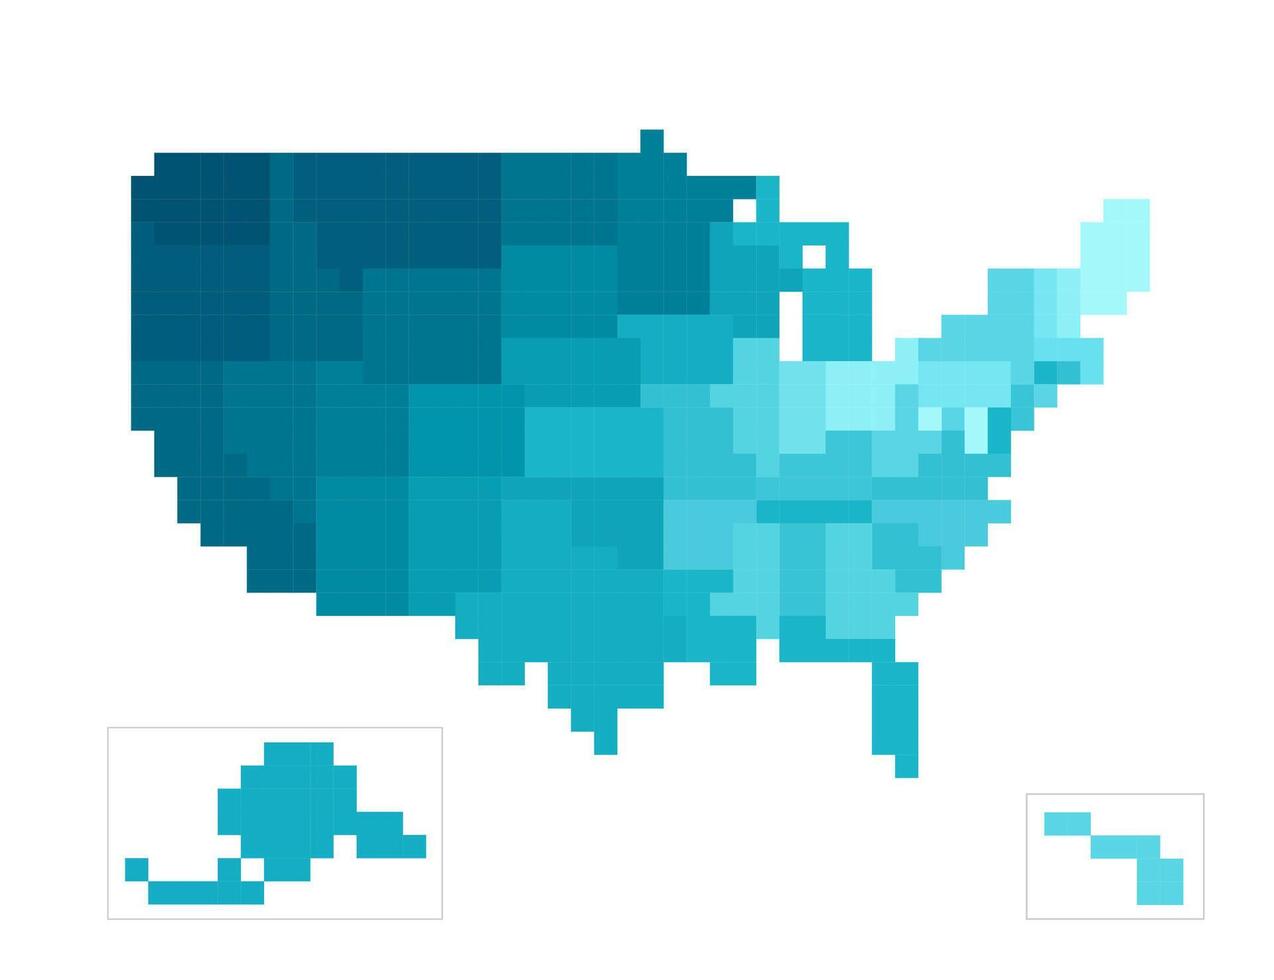 vetor isolado conceito do simplificado administrativo mapa do EUA, Unidos estados do América. fronteiras do a estados tem gradiente textura. colorida azul formas dentro pixel estilo estão modelo para nft arte